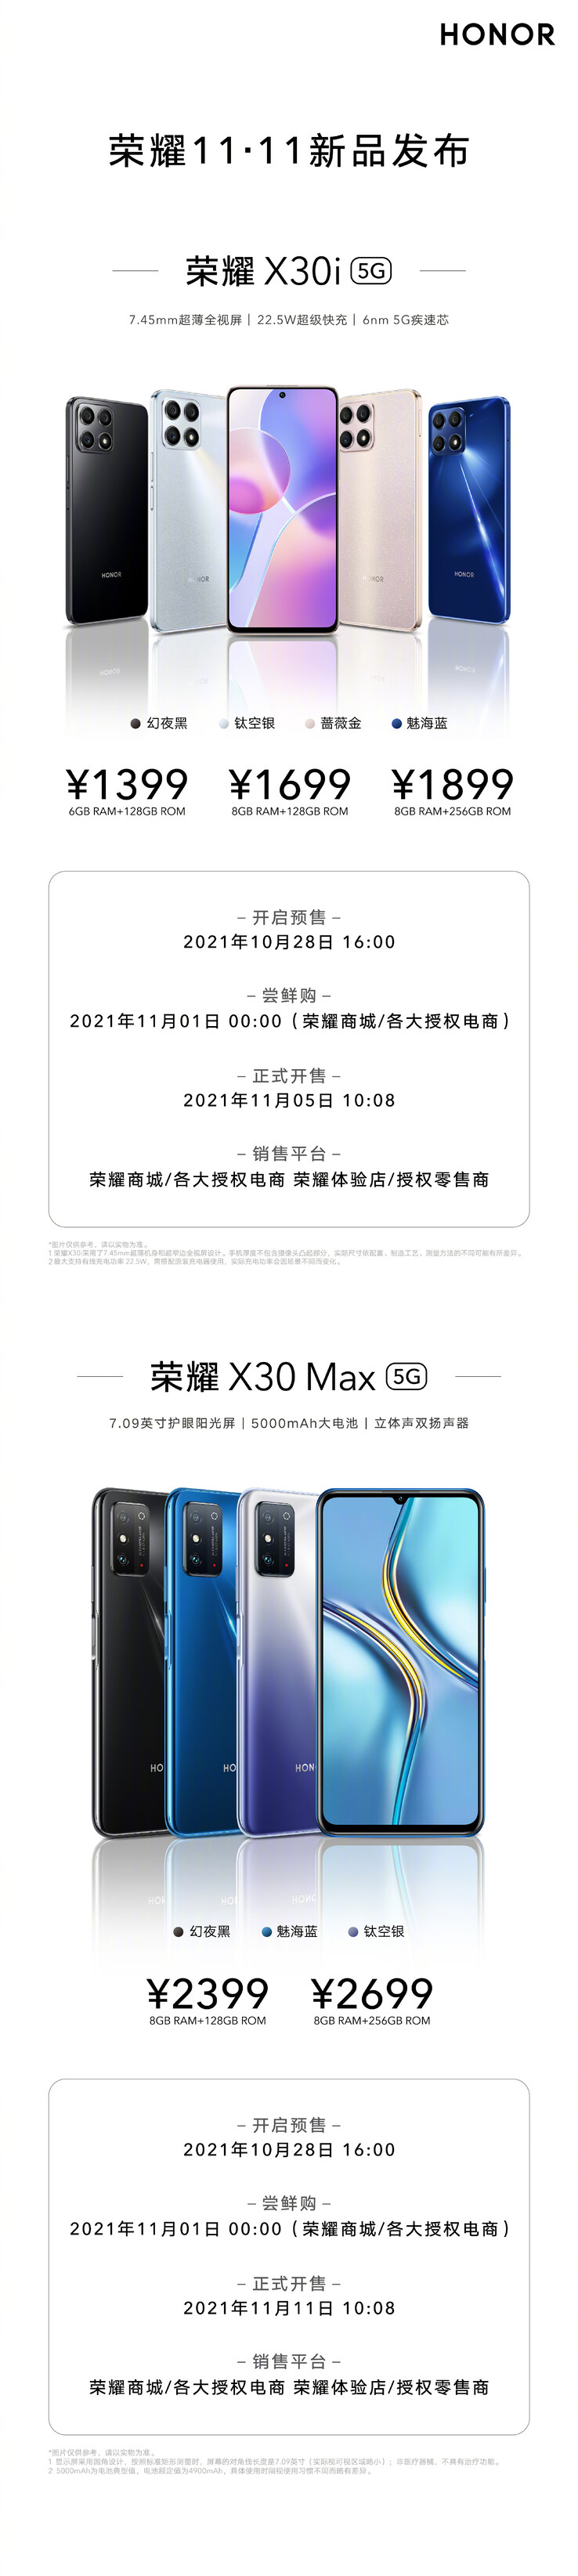 Honor revela o X30i e X30 Max com 3 vias de cor cada. (Fonte: Honor via Weibo)